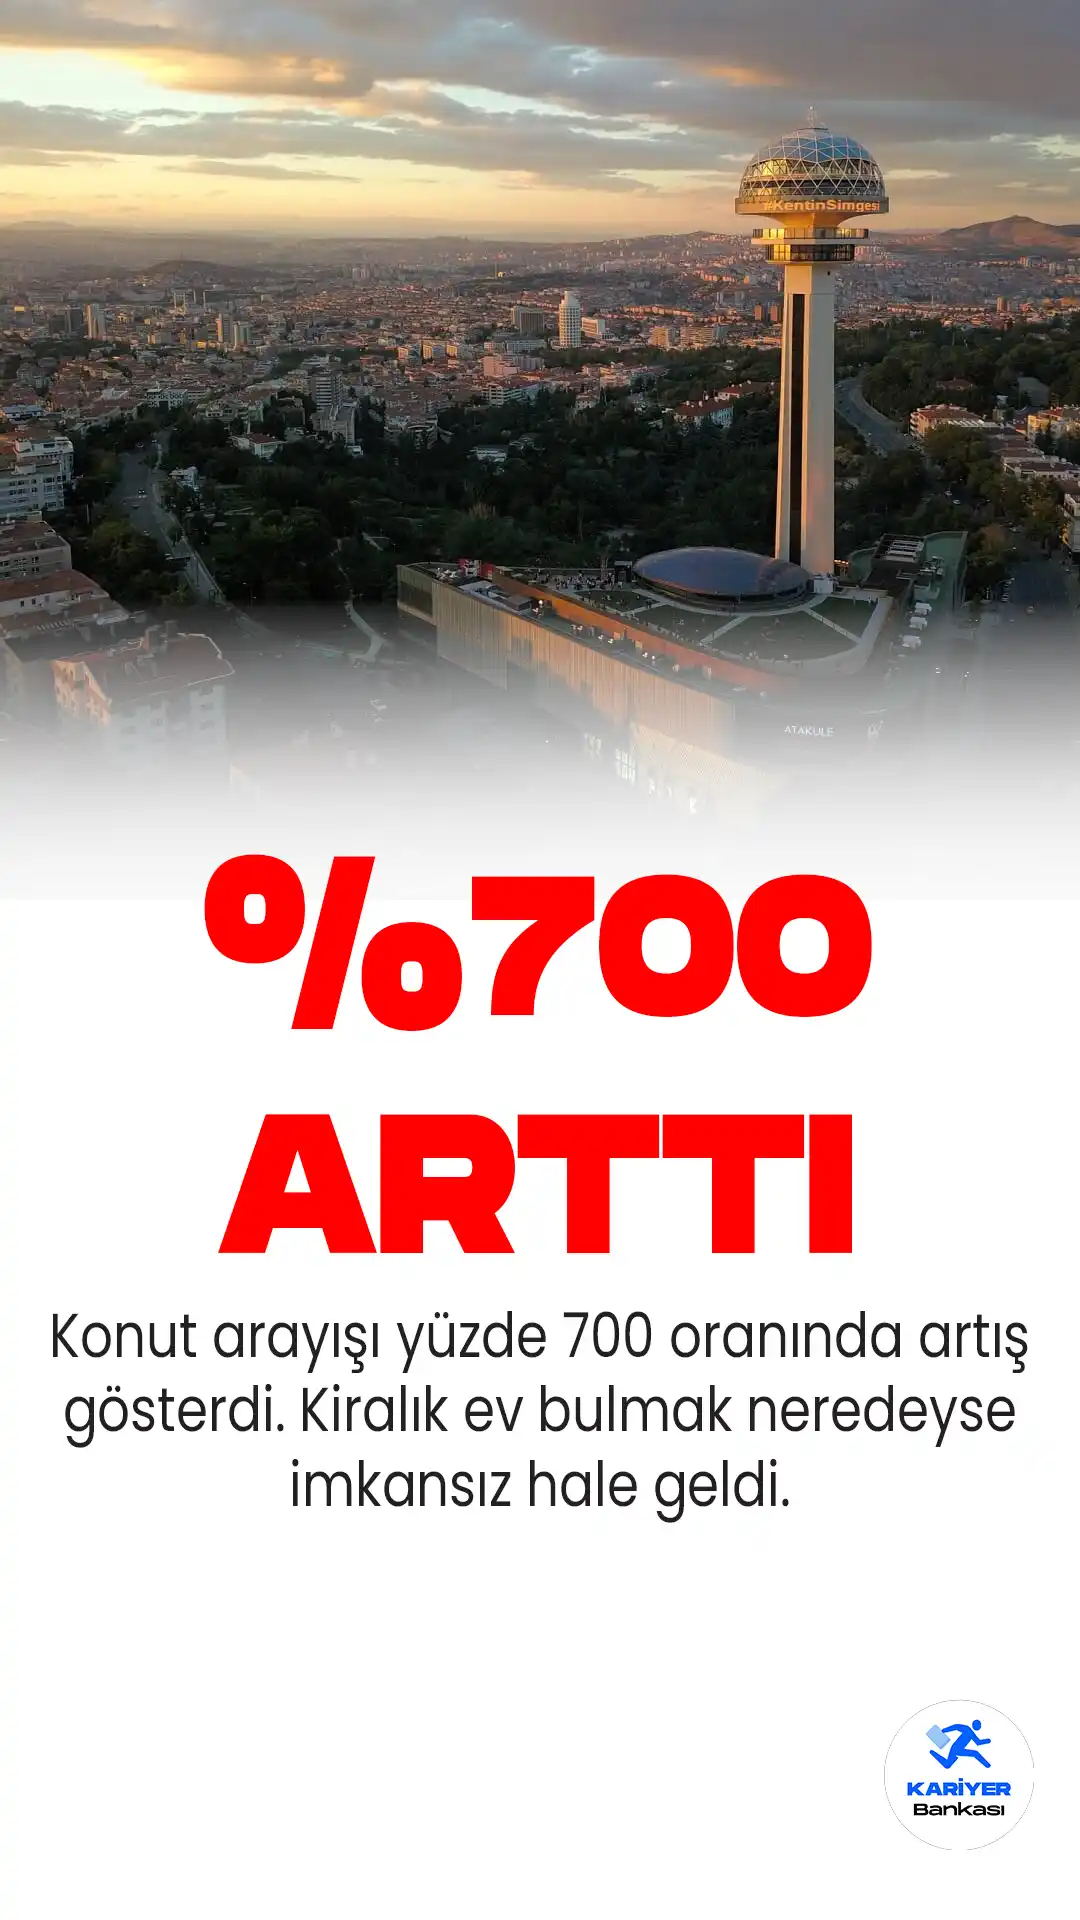 Emlakjet verilerine göre, deprem sonrası gayrimenkul talebi Diyarbakır ve Ankara'ya yönelirken, satın almada beklenti kredi desteği oldu.